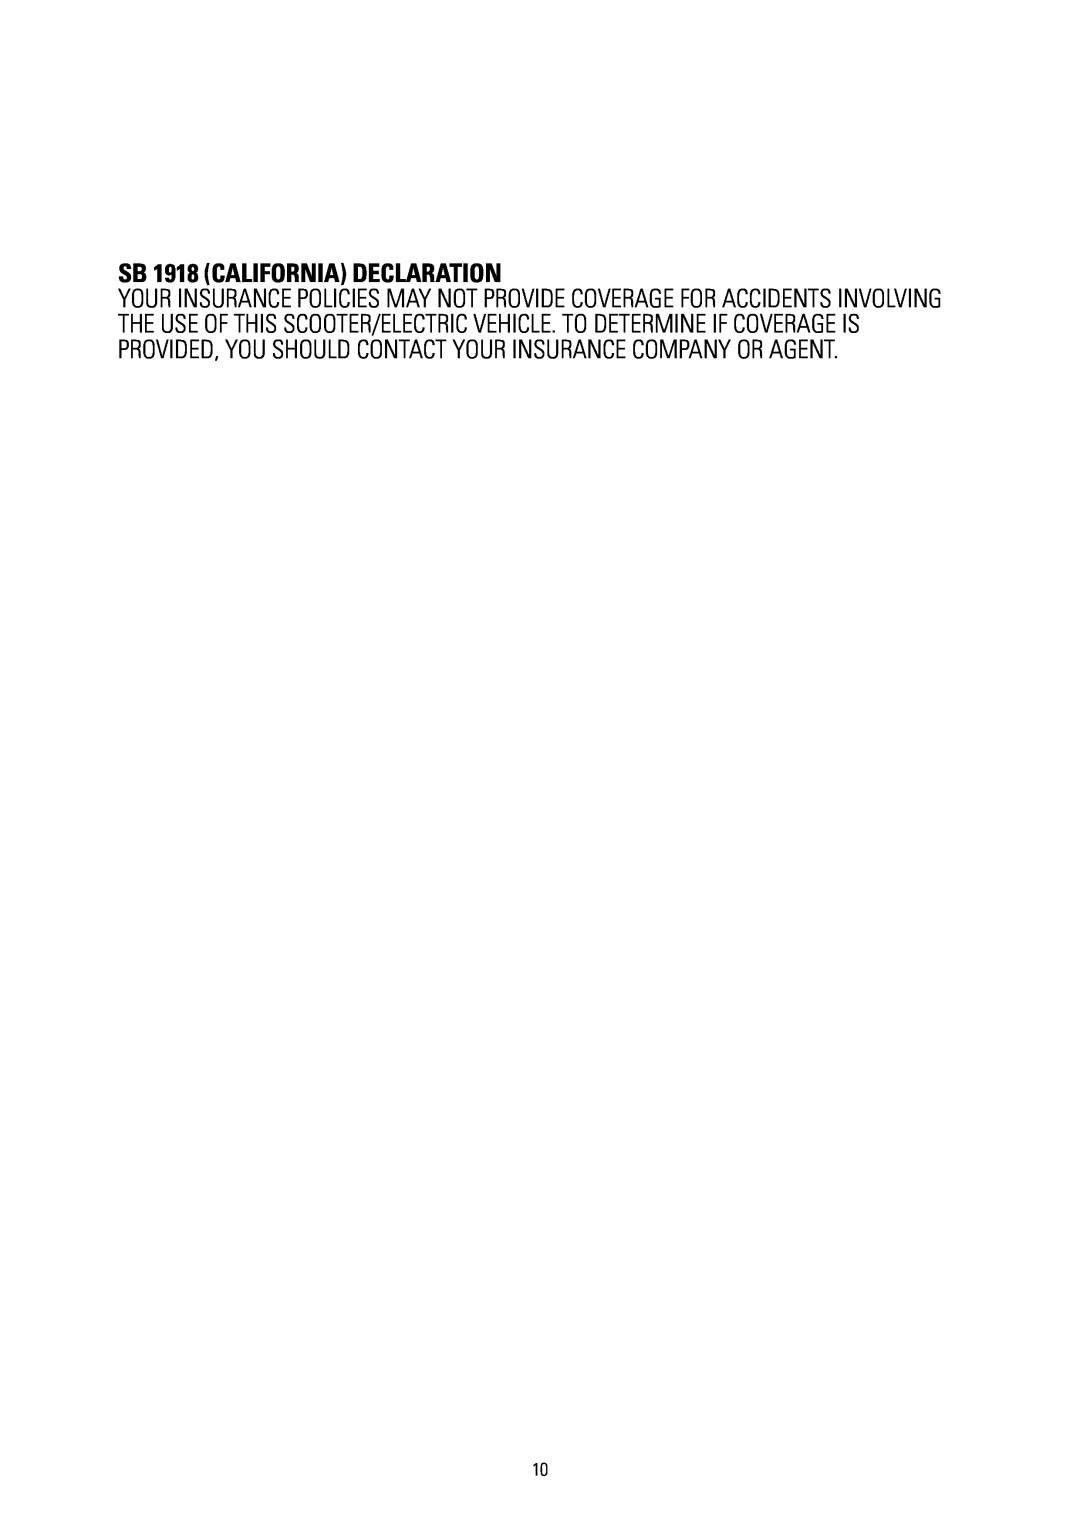 Razor 25117460 owner manual SB 1918 CALIFORNIA DECLARATION 